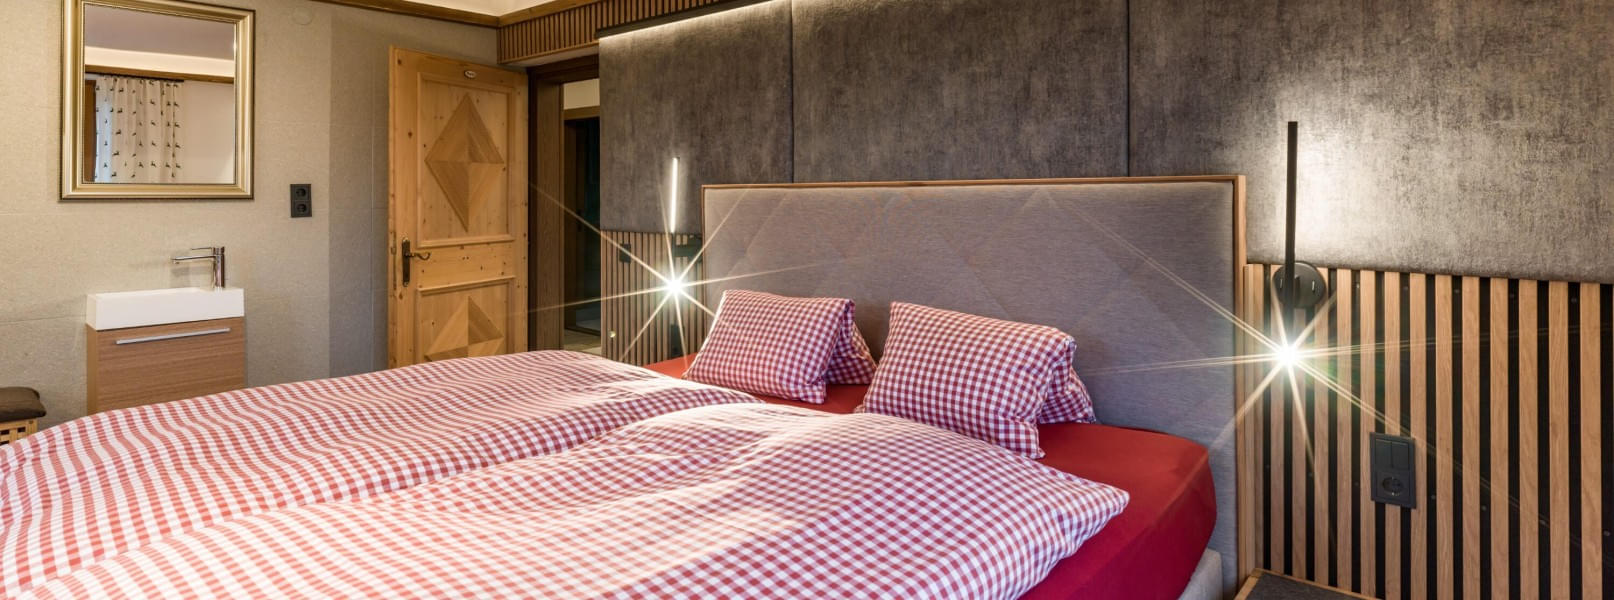 Doppelbettzimmer mit ausziehbarer Schlafcouch im 1. Stock